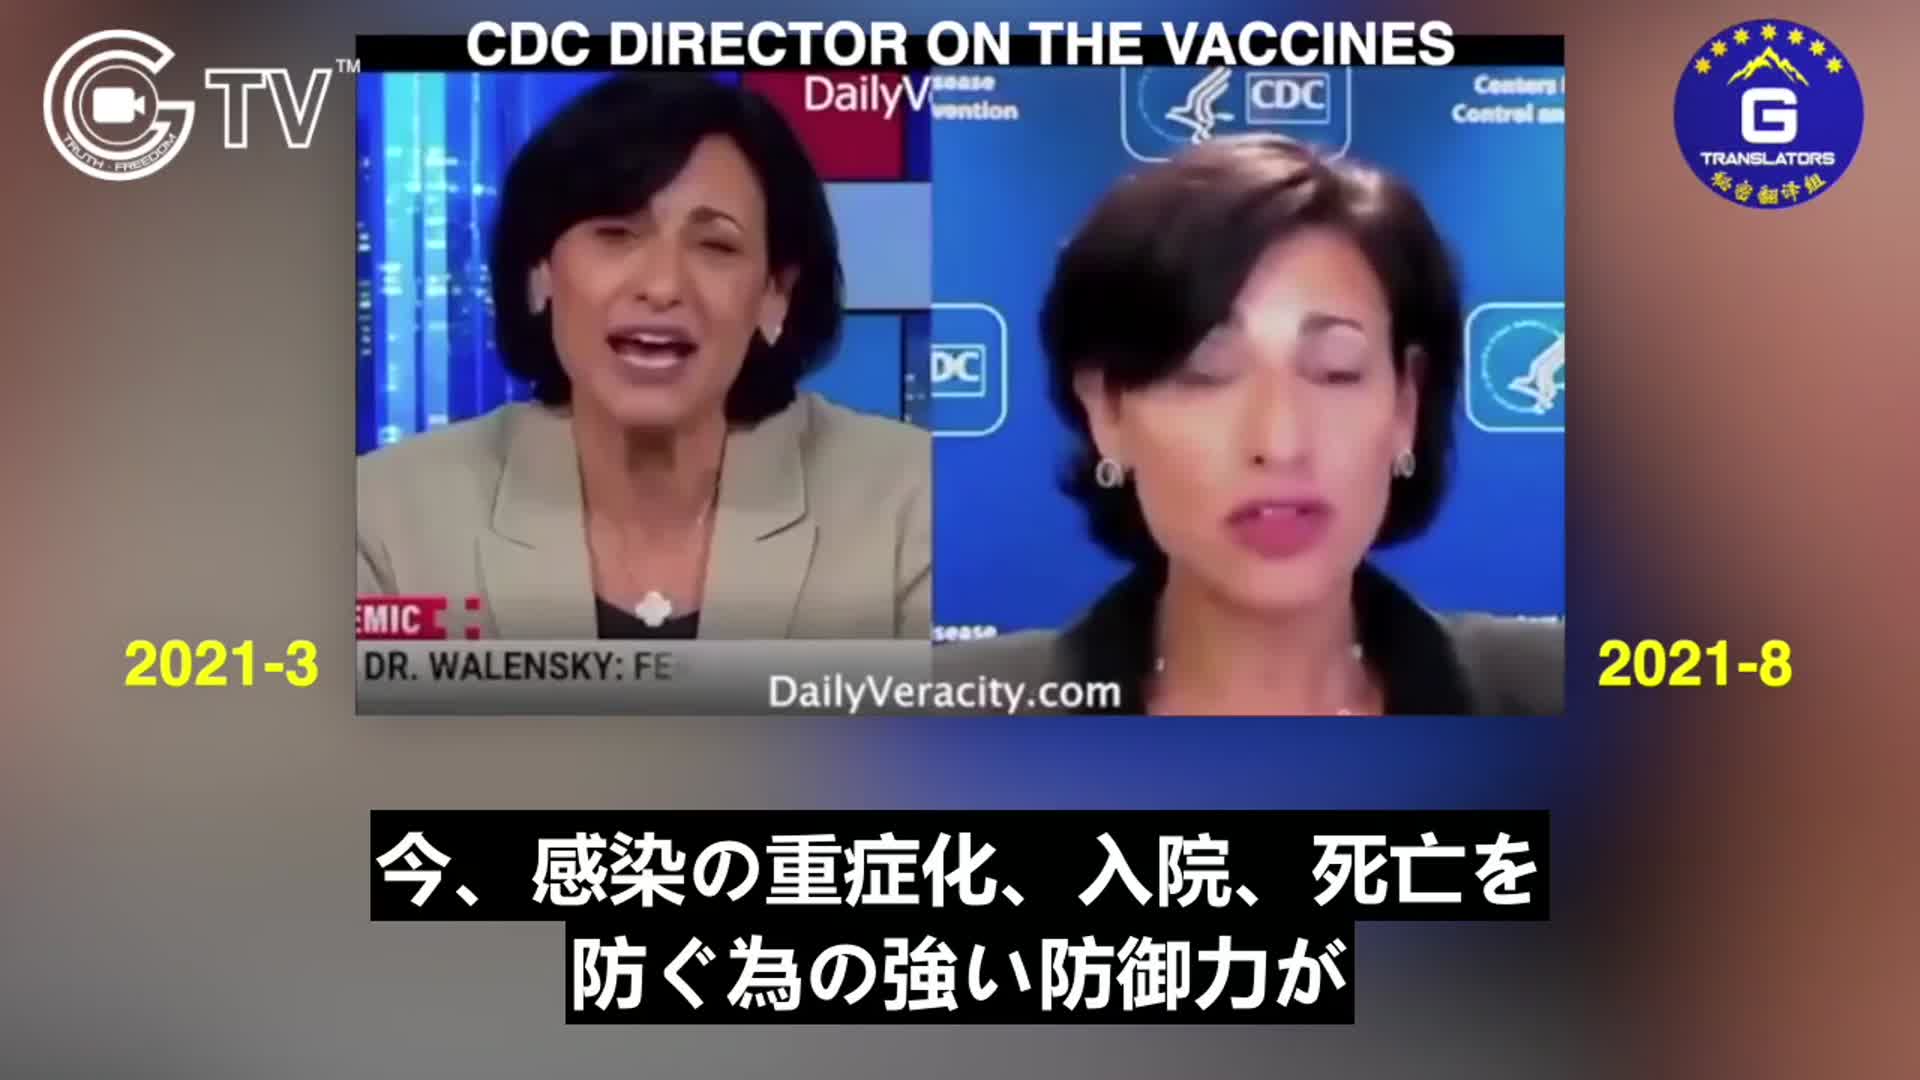 8/2021 [JP] CDC所長は、ワクチンに対する楽観的な見方を改め、早期にワクチンを接種した人は深刻な病気になる可能性があると考えている.